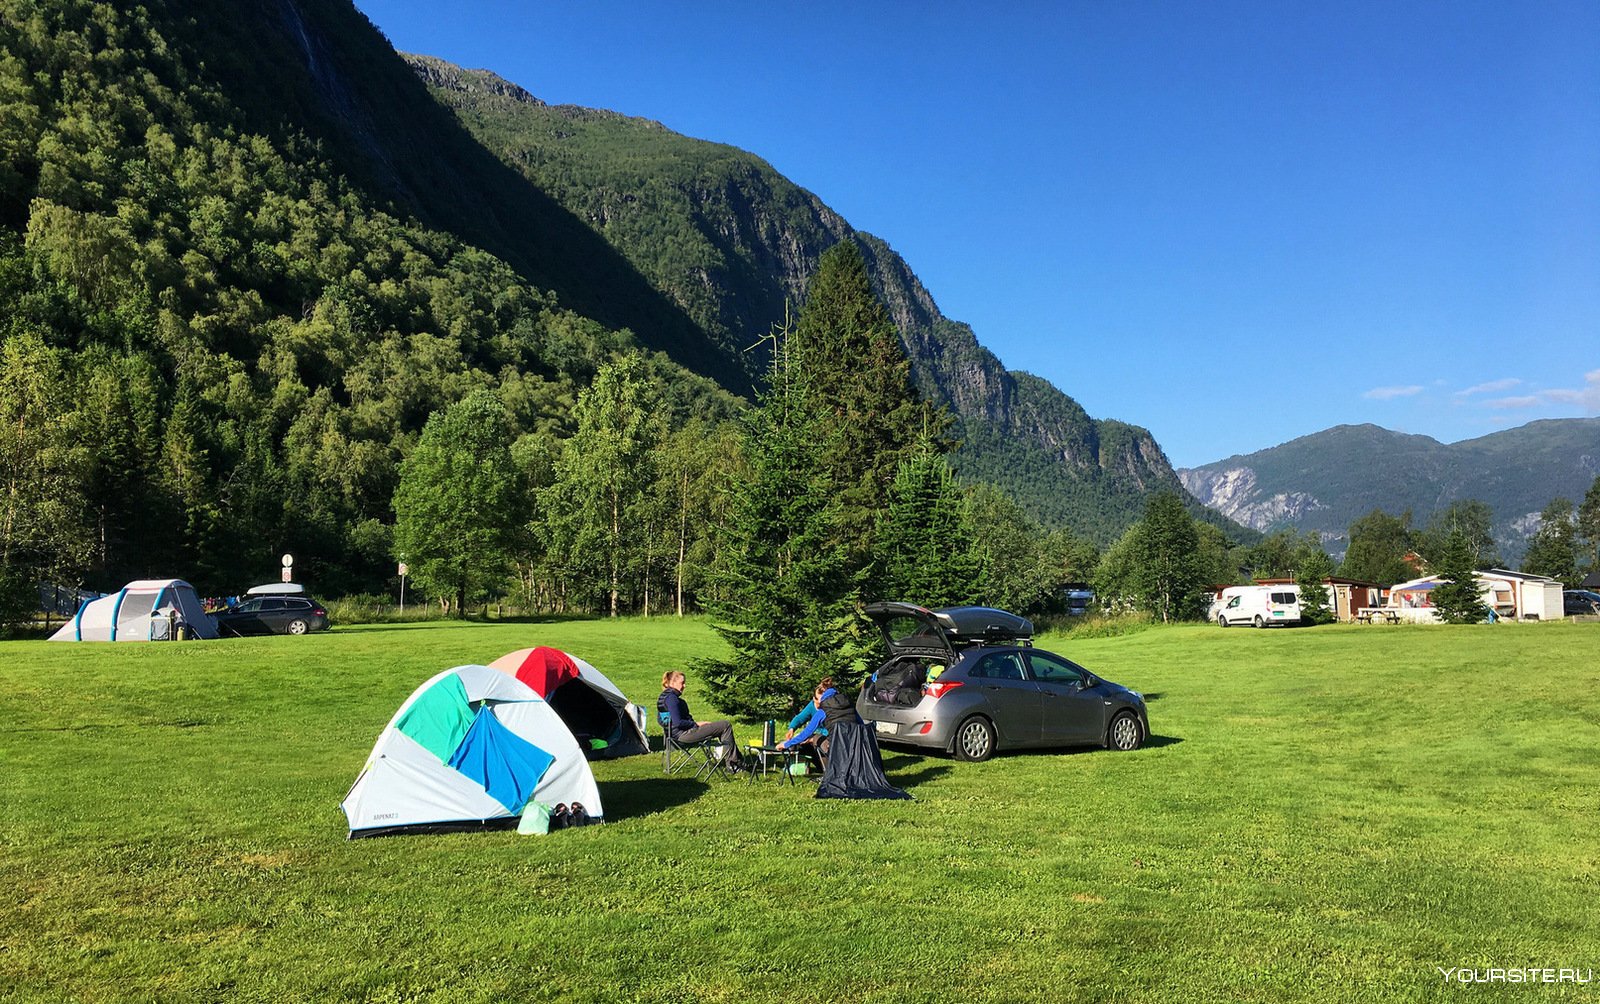 Горный кемпинг. Палаточный лагерь в Норвегии. Кэмпинг Панорамико Италия. Палатка в горах.